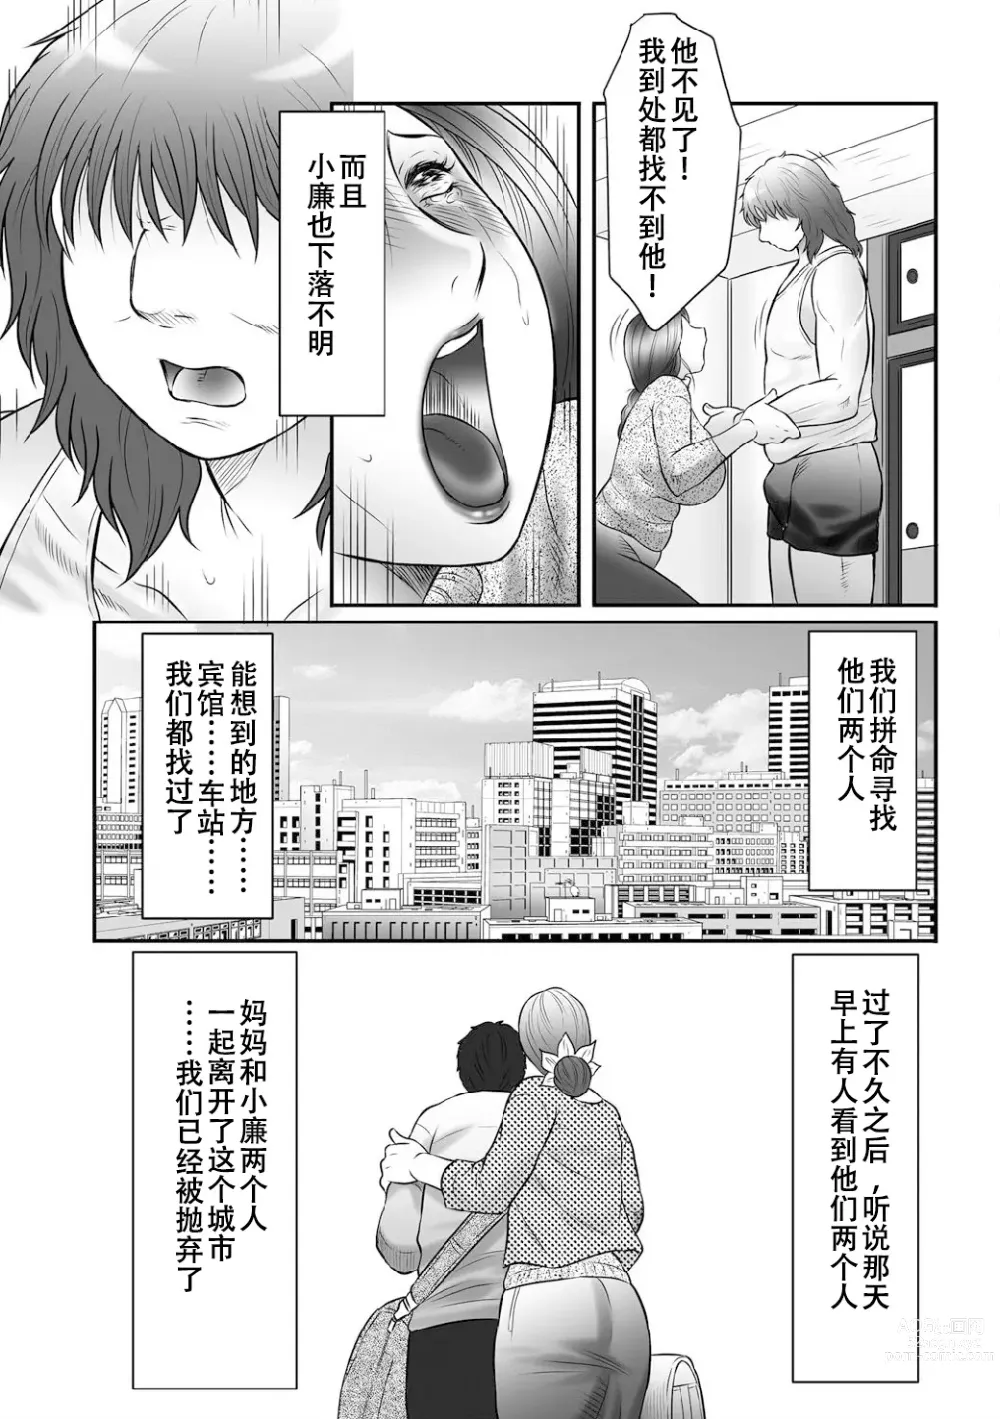 Page 2 of manga Haha Kangoku INFINITY